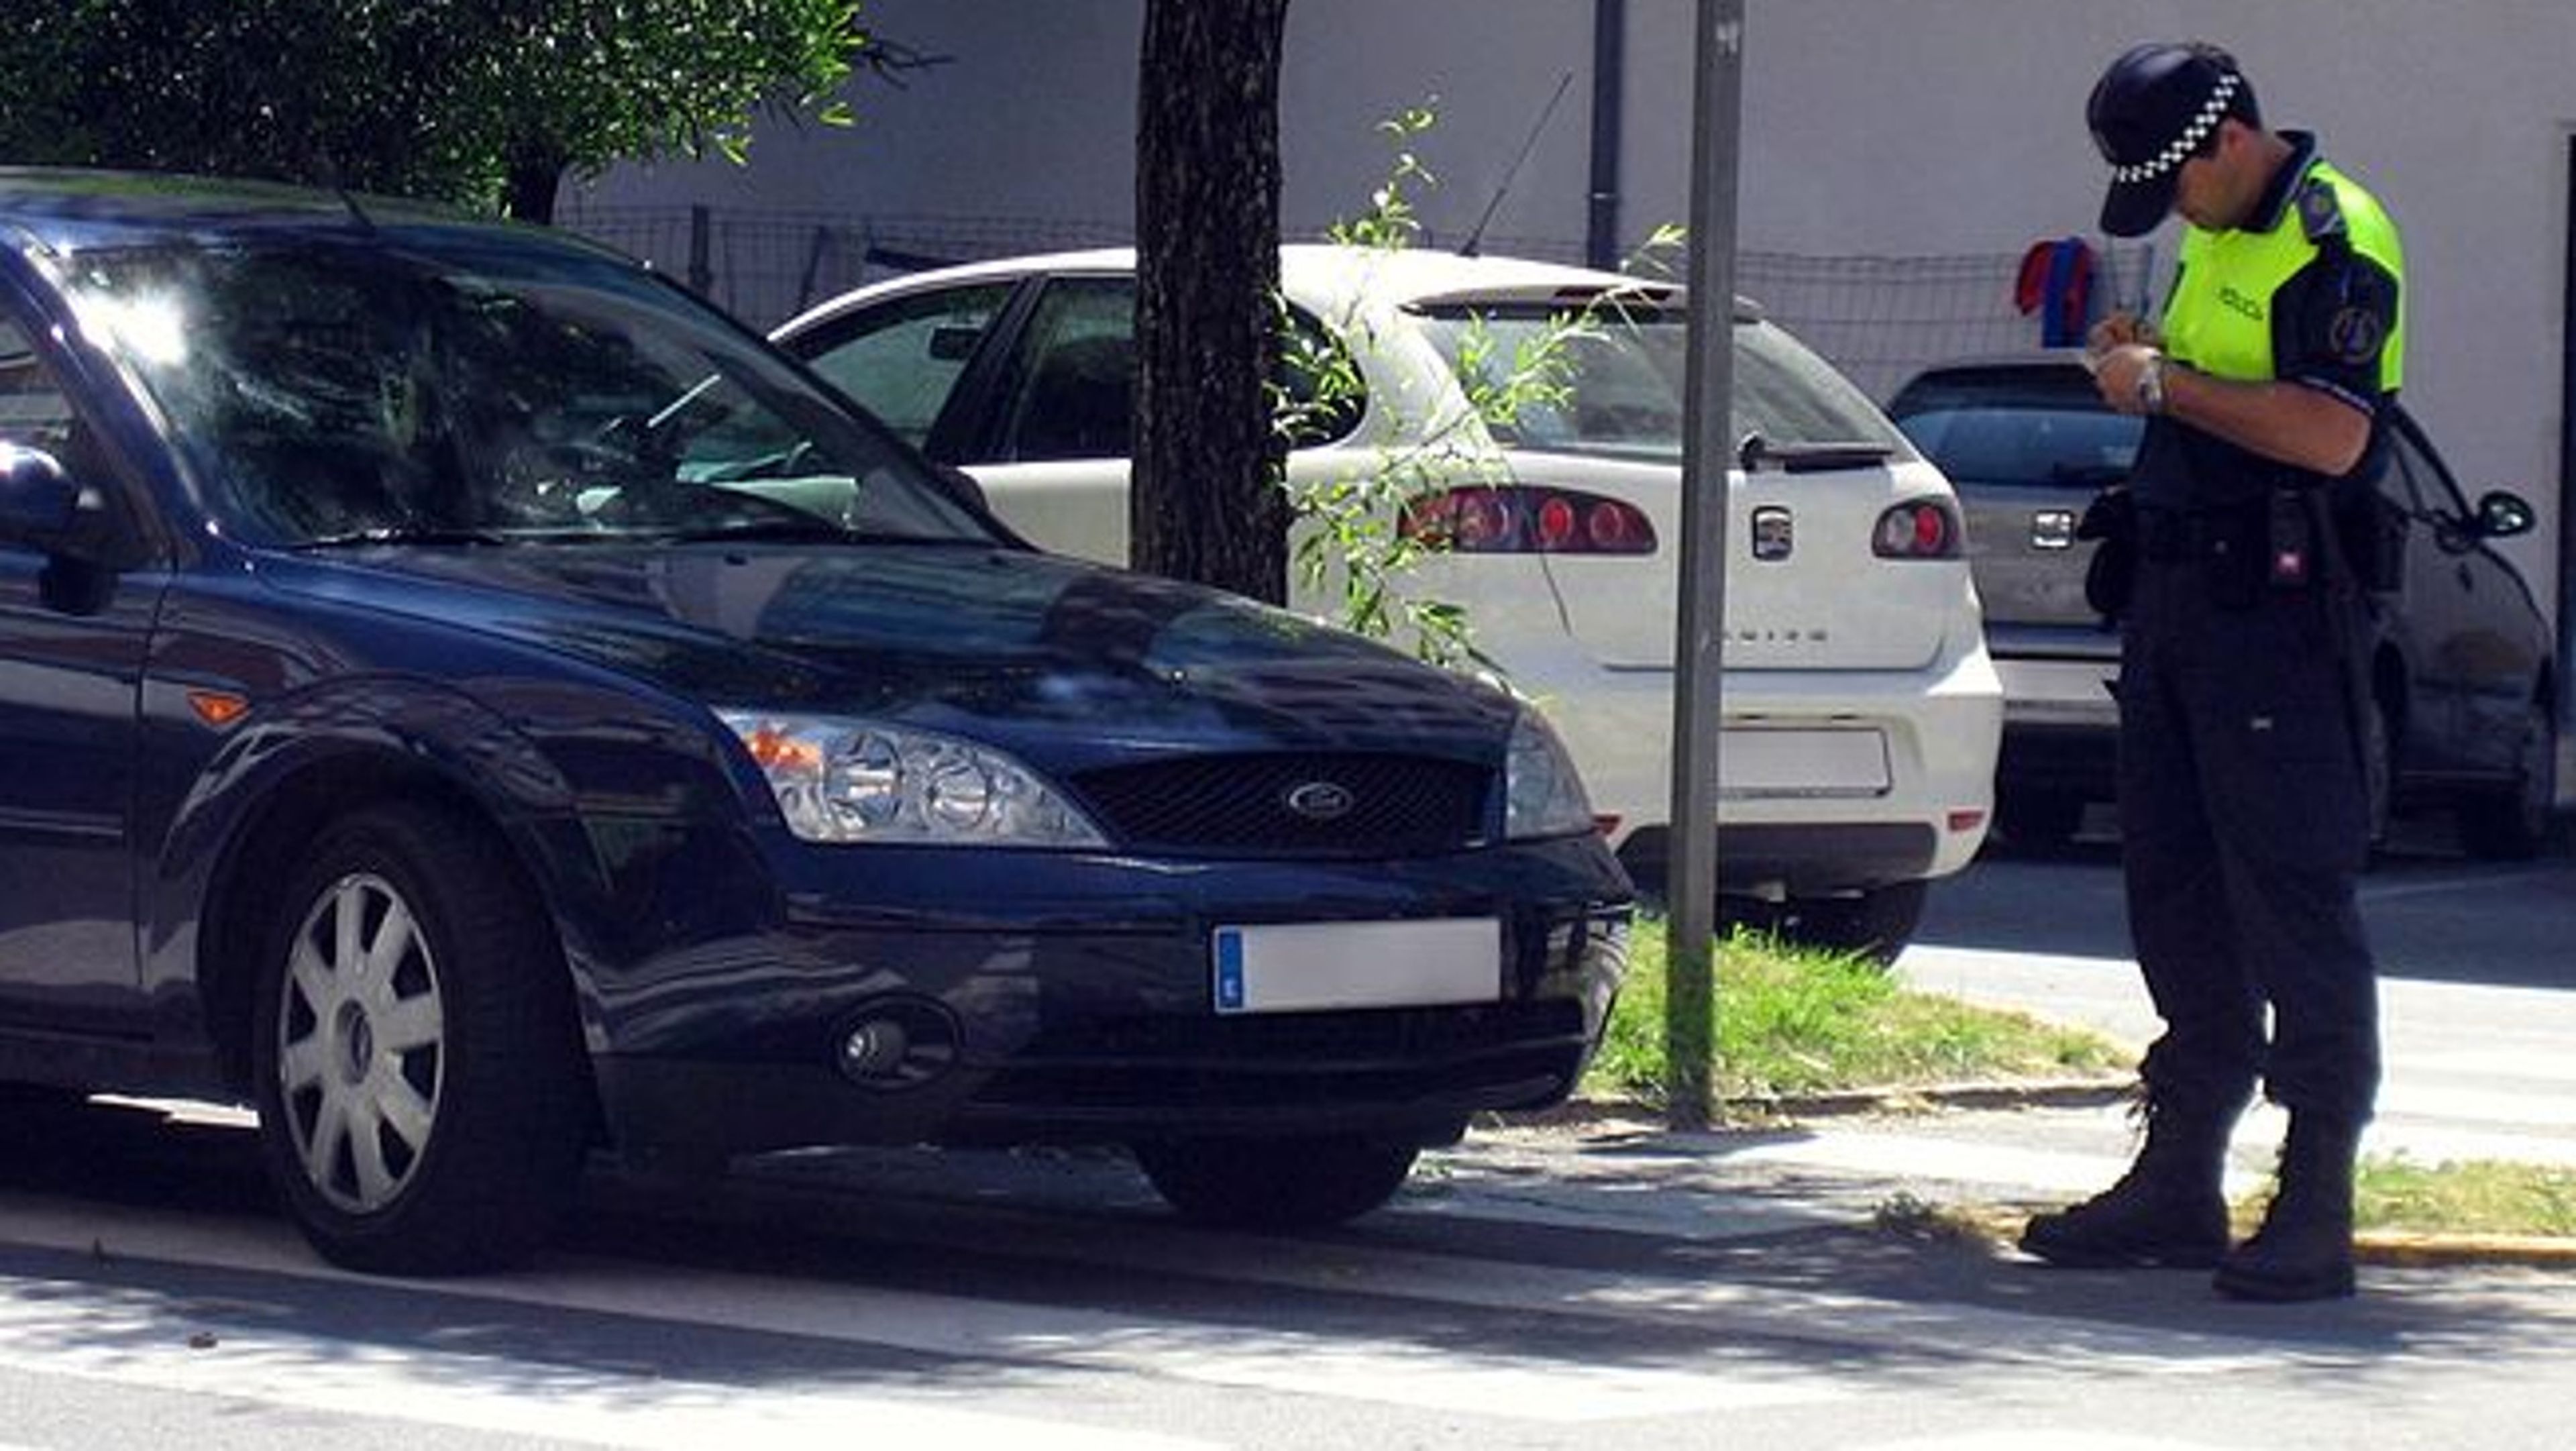 Anulada multa por señal de tráfico solo en catalán